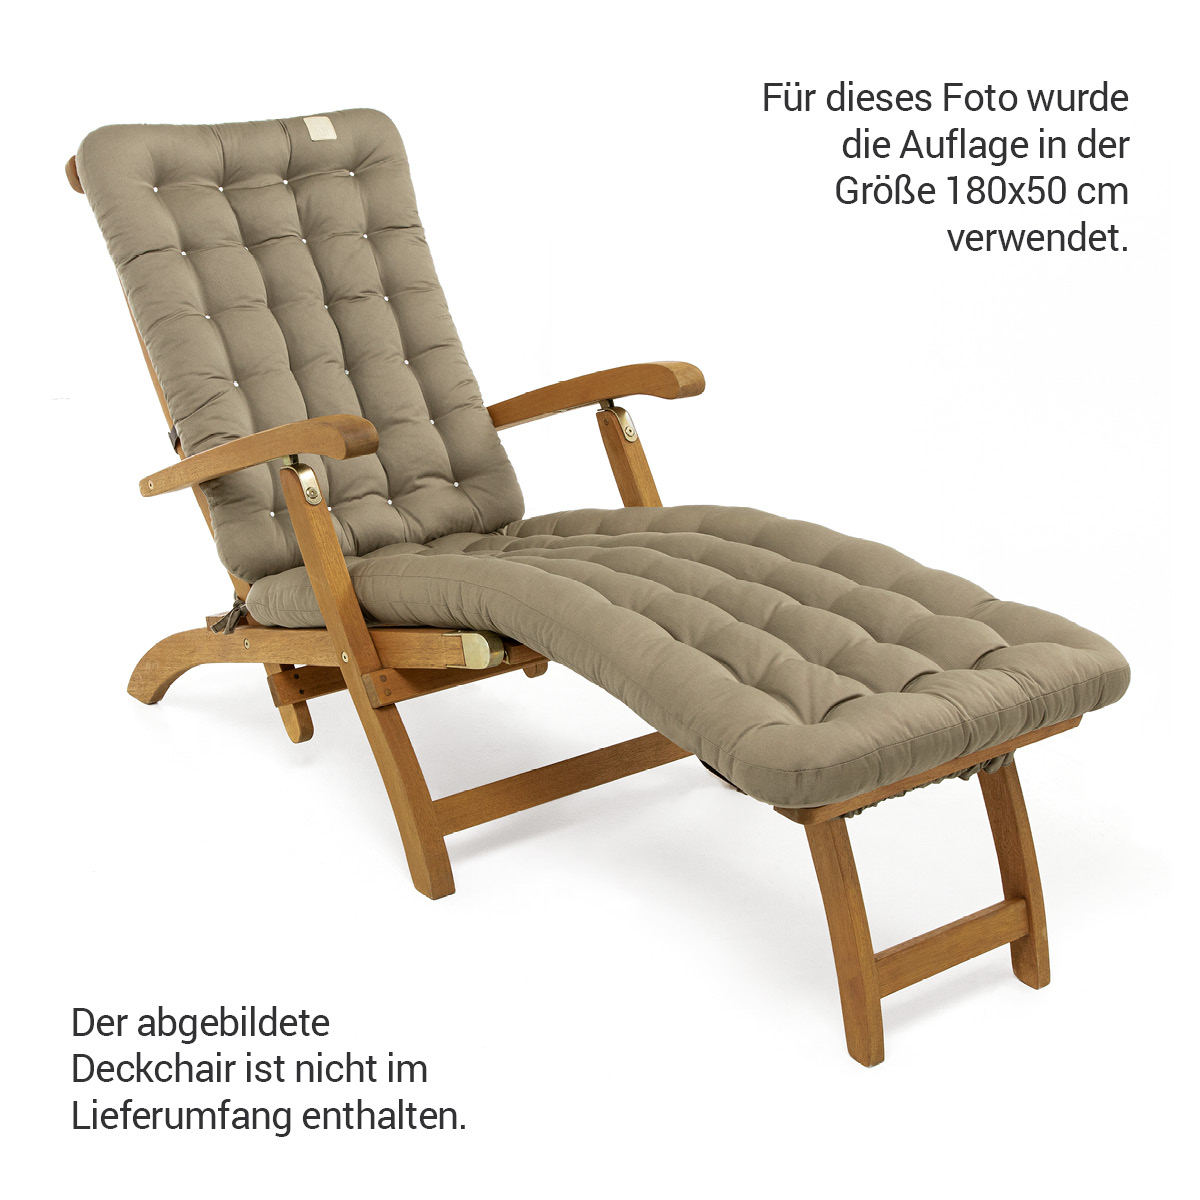 Gepolsterte Sitzauflage für Deckchair auf Liegestuhl  mit Thermo-Komfortpolsterung, Baumwoll-Mischgewebe Goldbraun | HAVE A SEAT Living